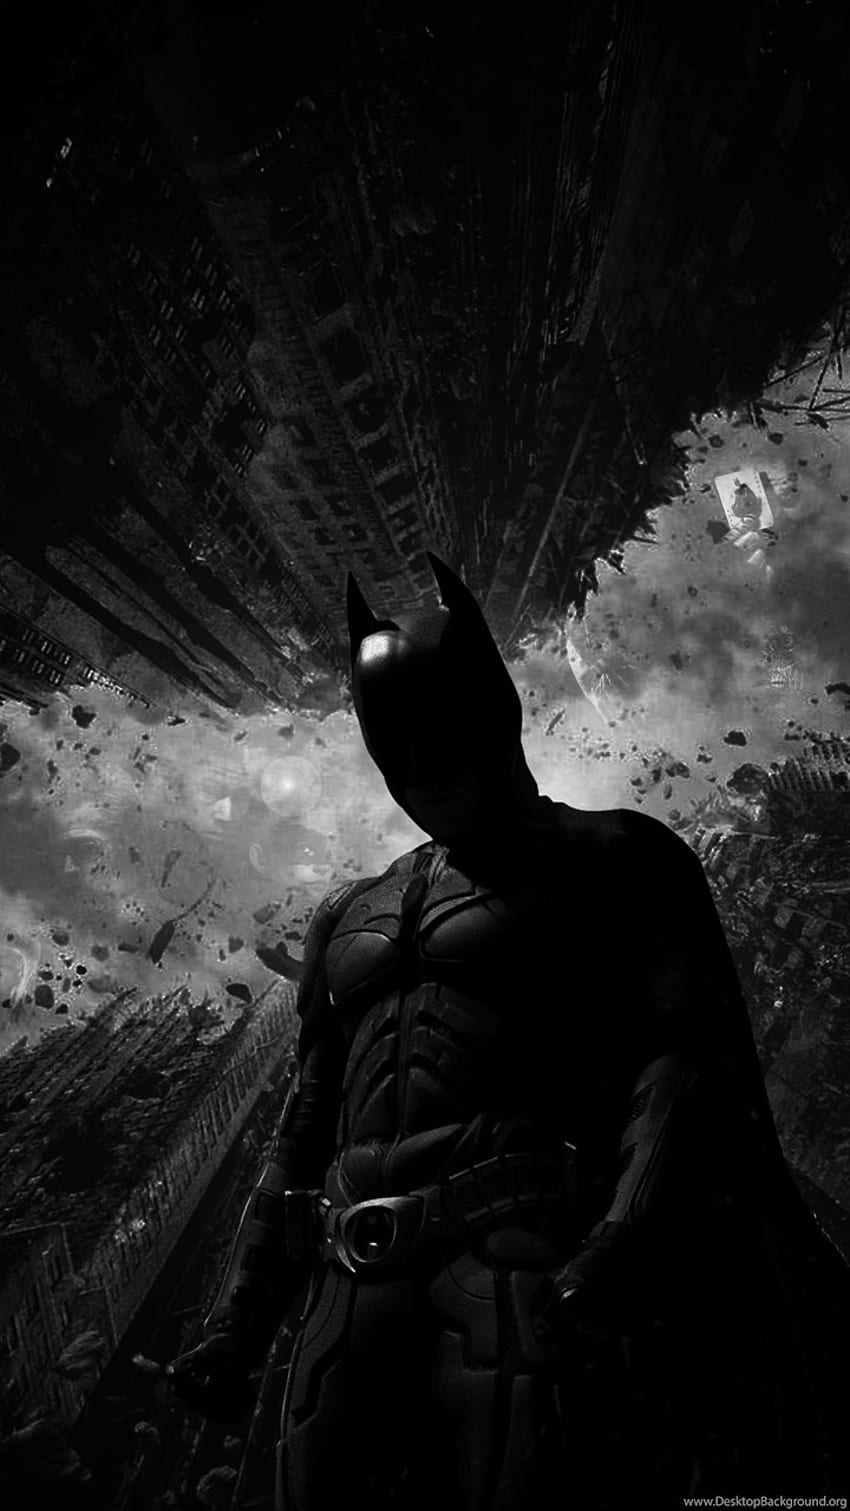 4K version of The Batman wallpaper : r/batman